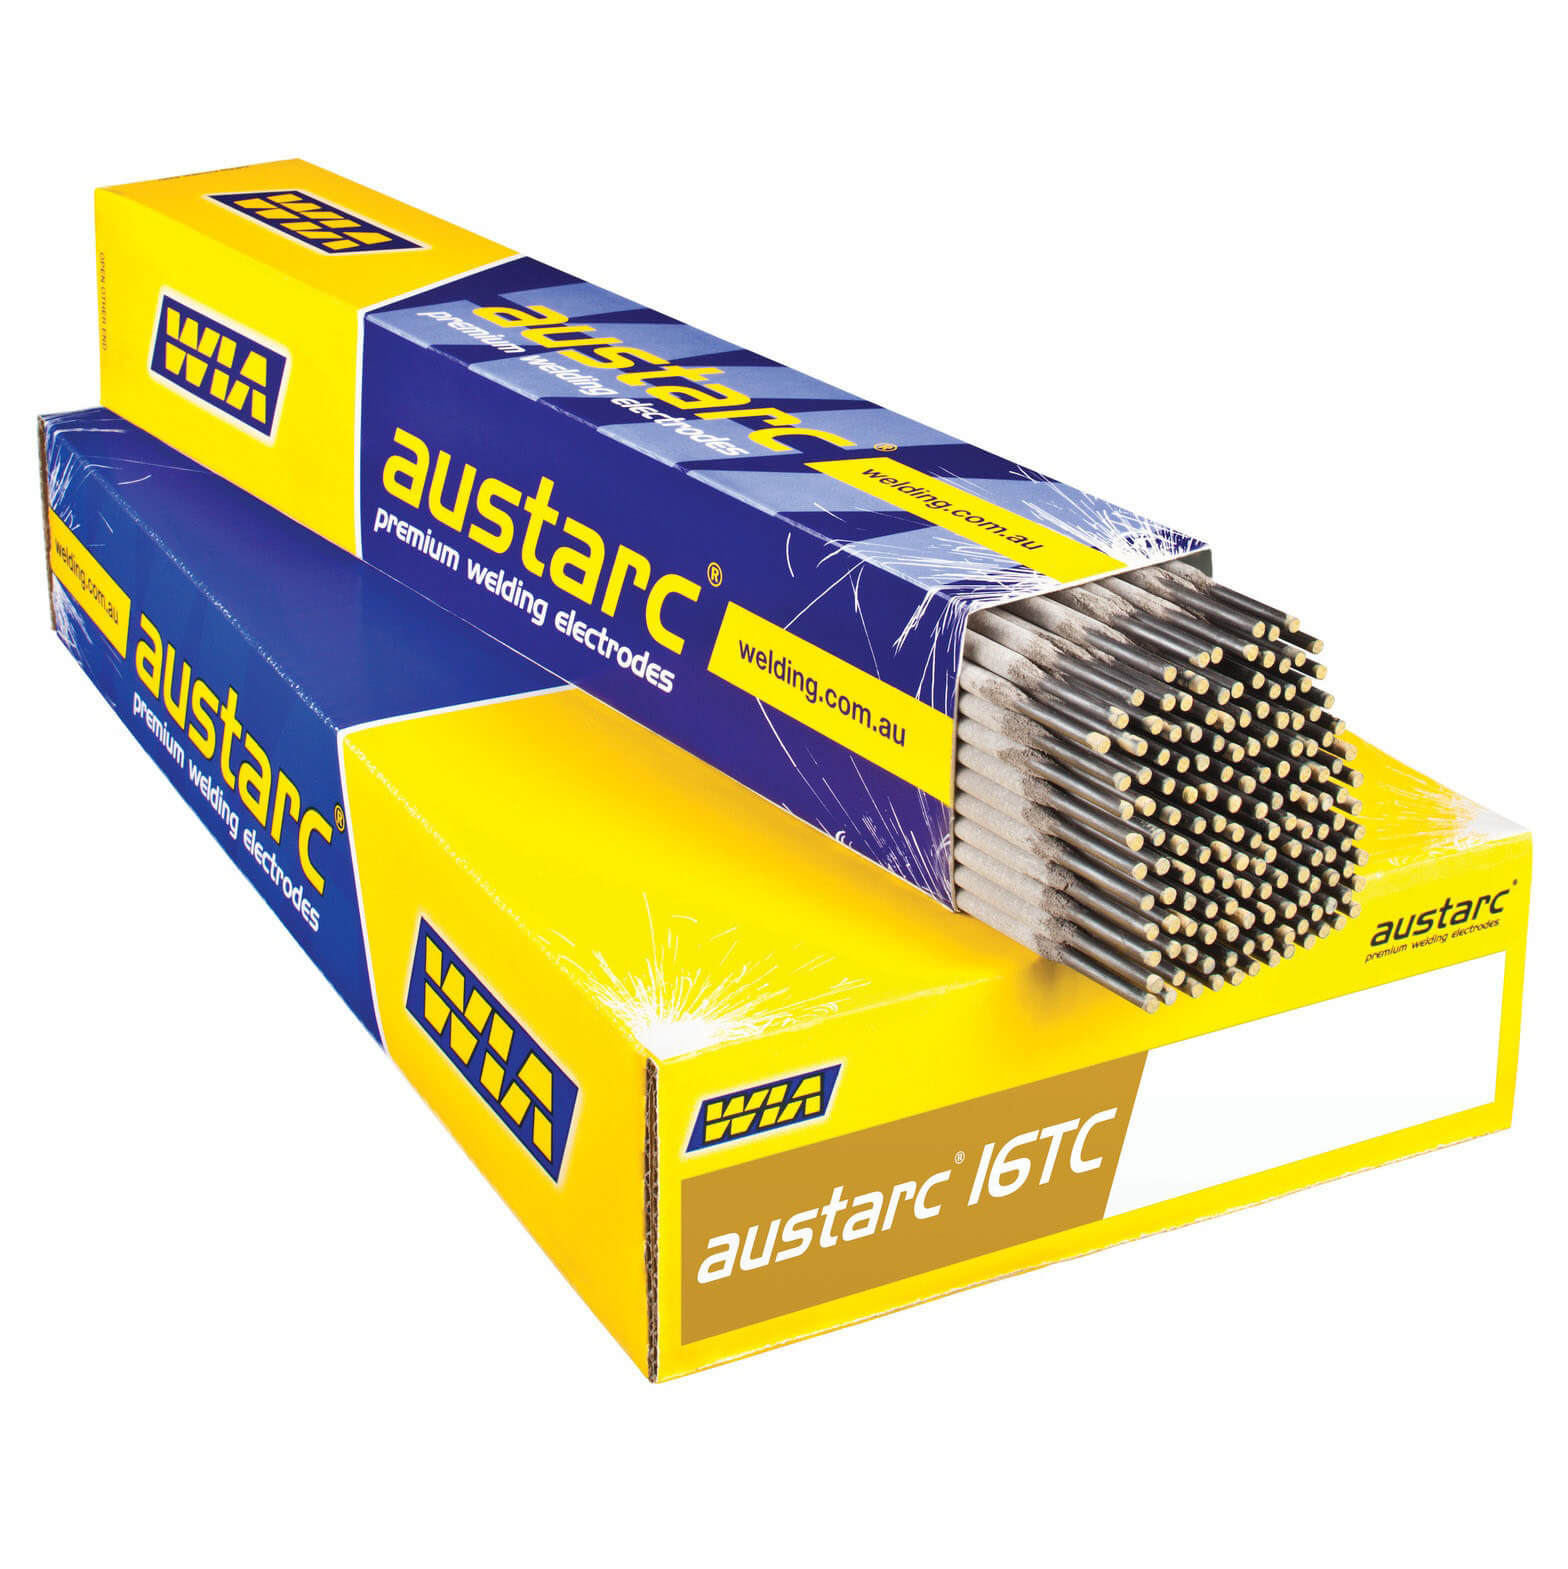 Austarc 16 Tc Electrodes Pack